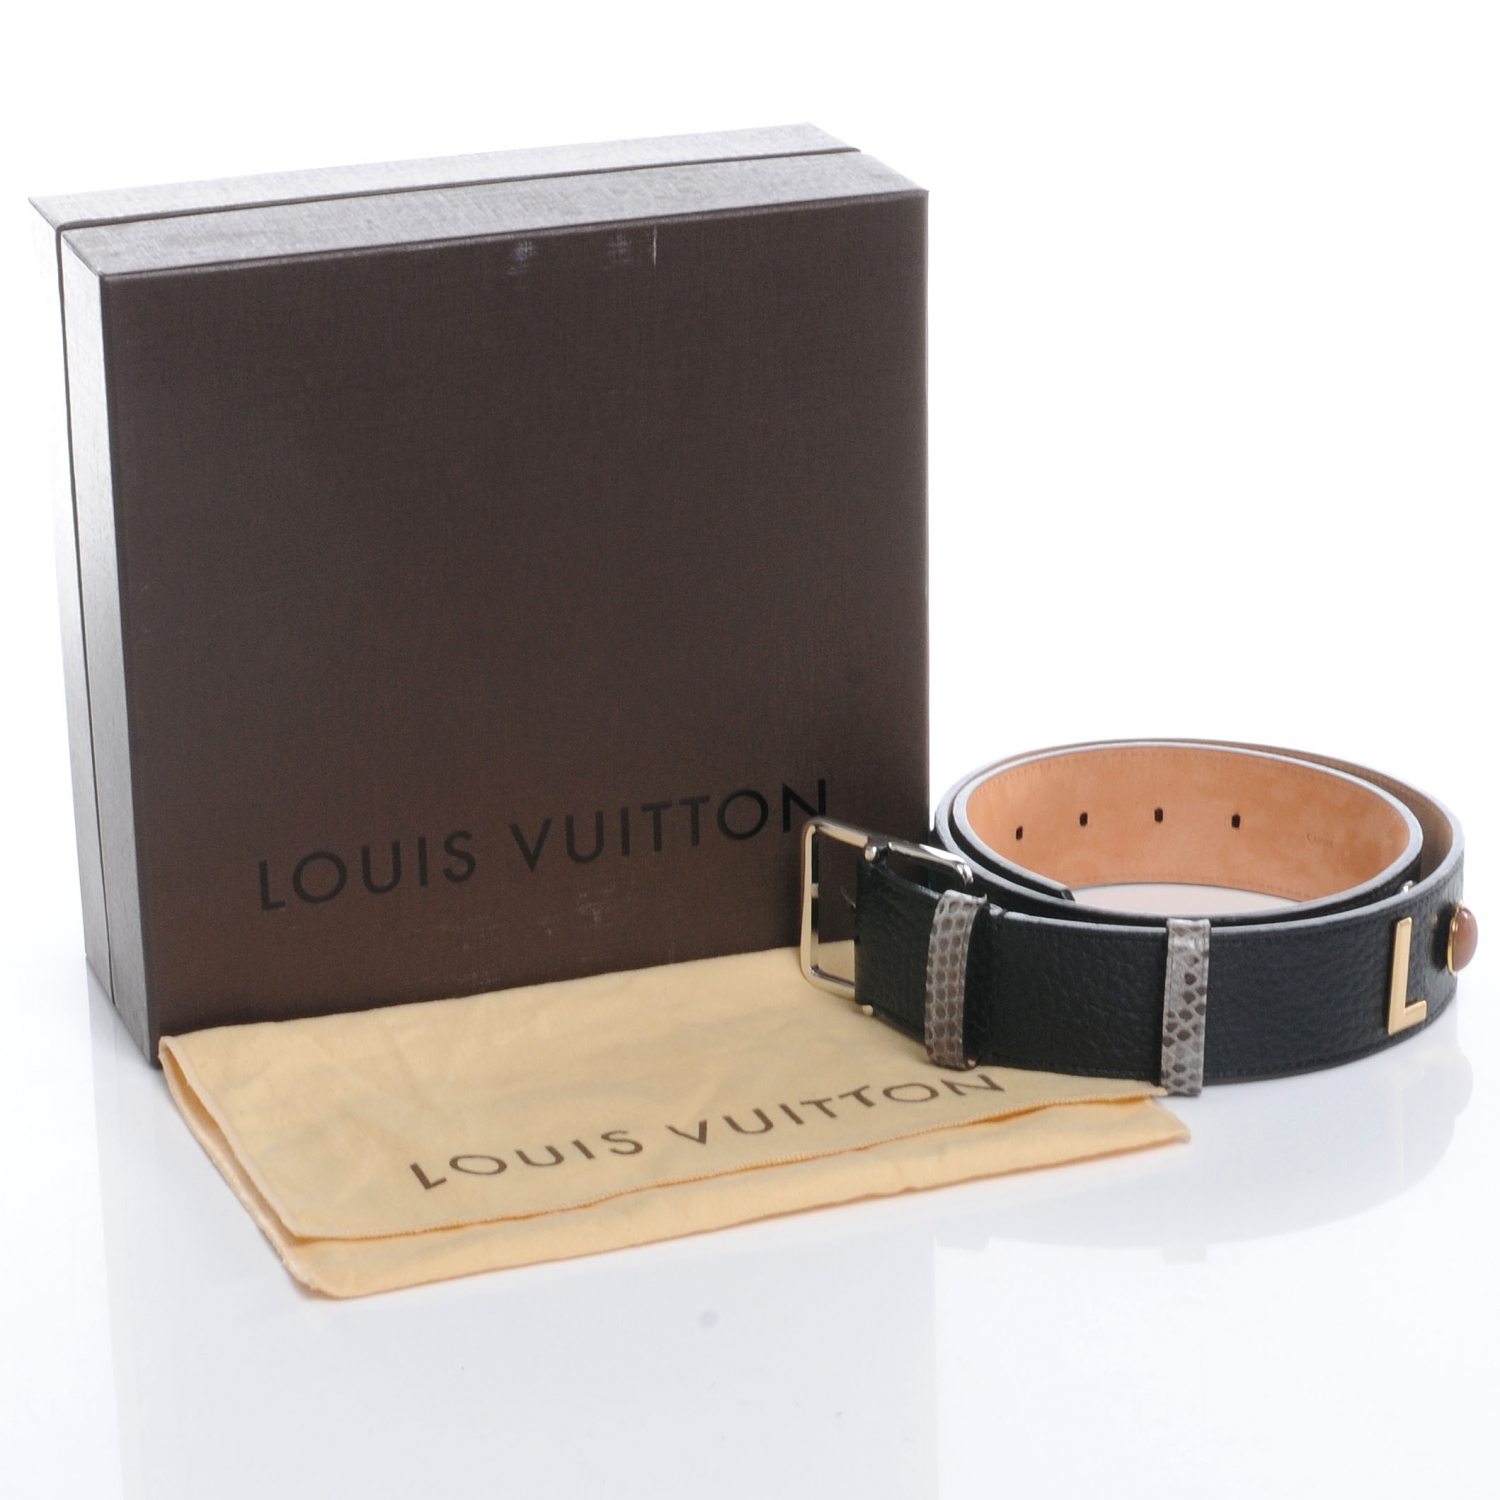 LOUIS VUITTON Leather Paris Belt Black 85 35 48612